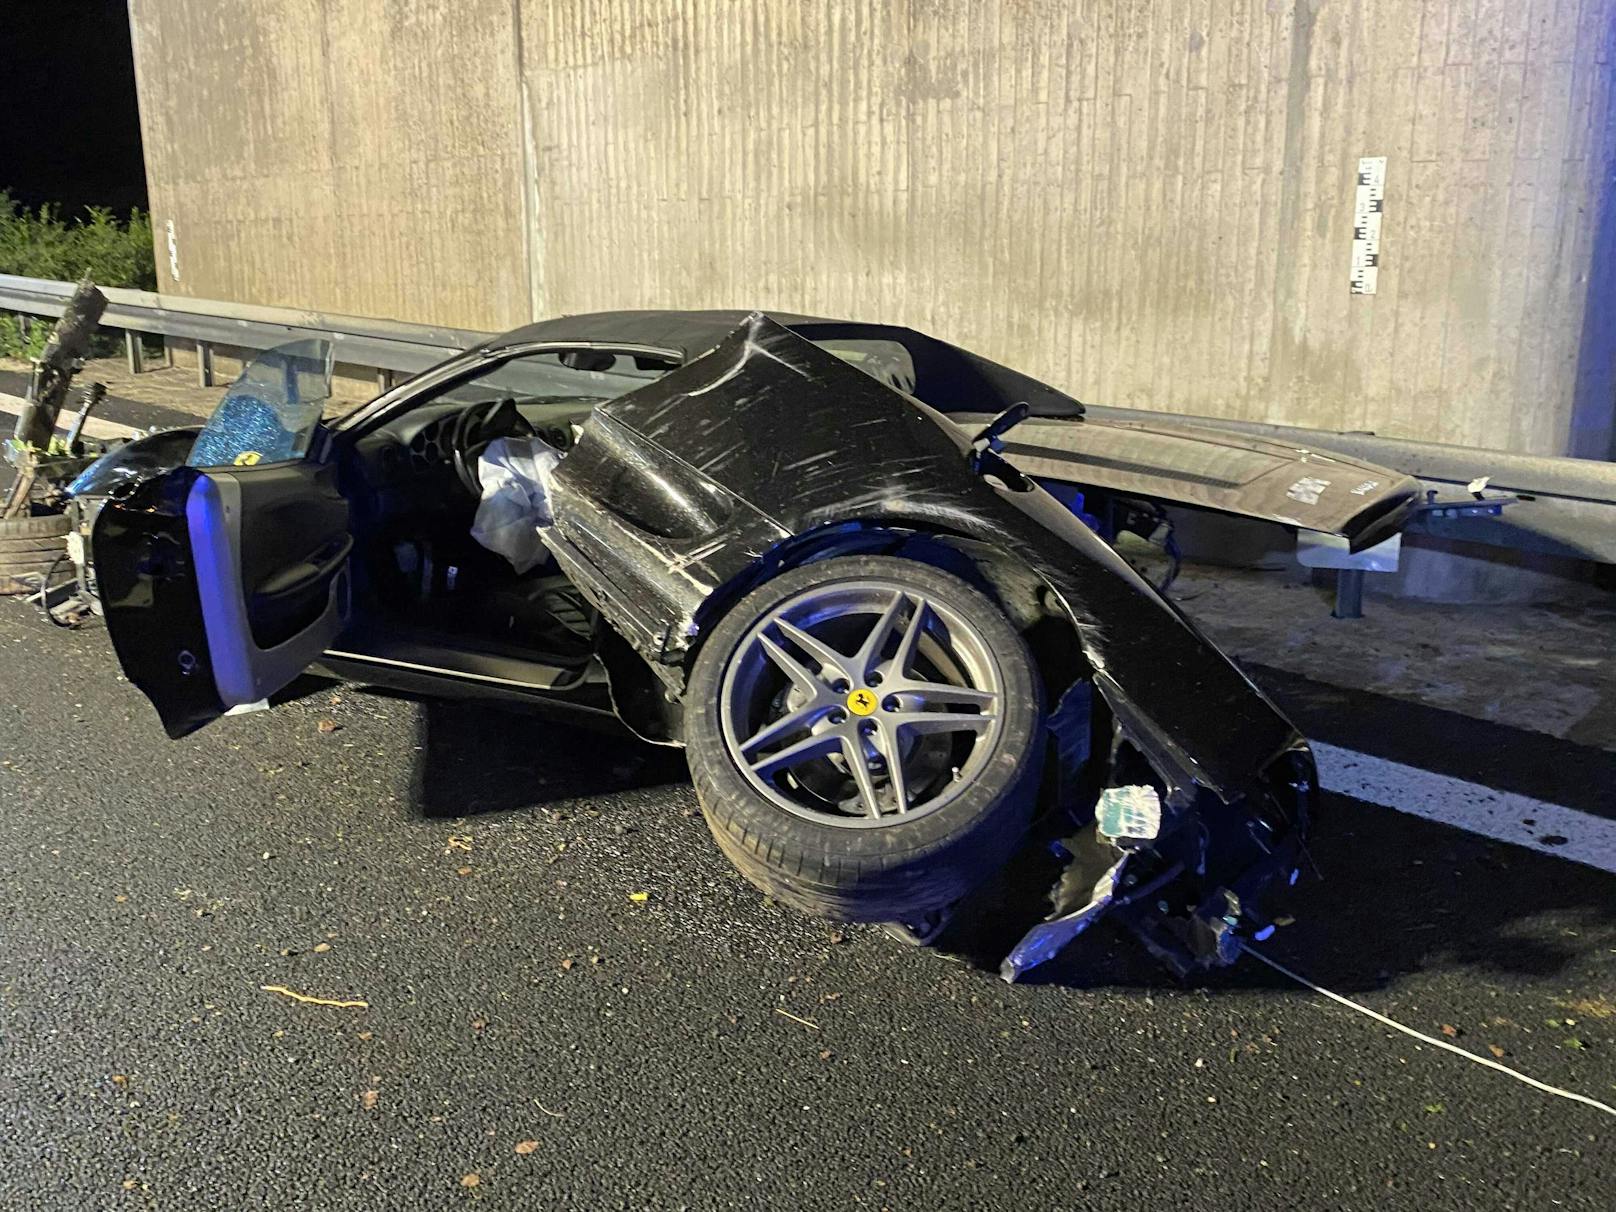 Ein Ferrari-Lenker hat bei Tempo 200 die Kontrolle verloren. Der Sportwagen überschlug sich und wurde komplett zerstört.